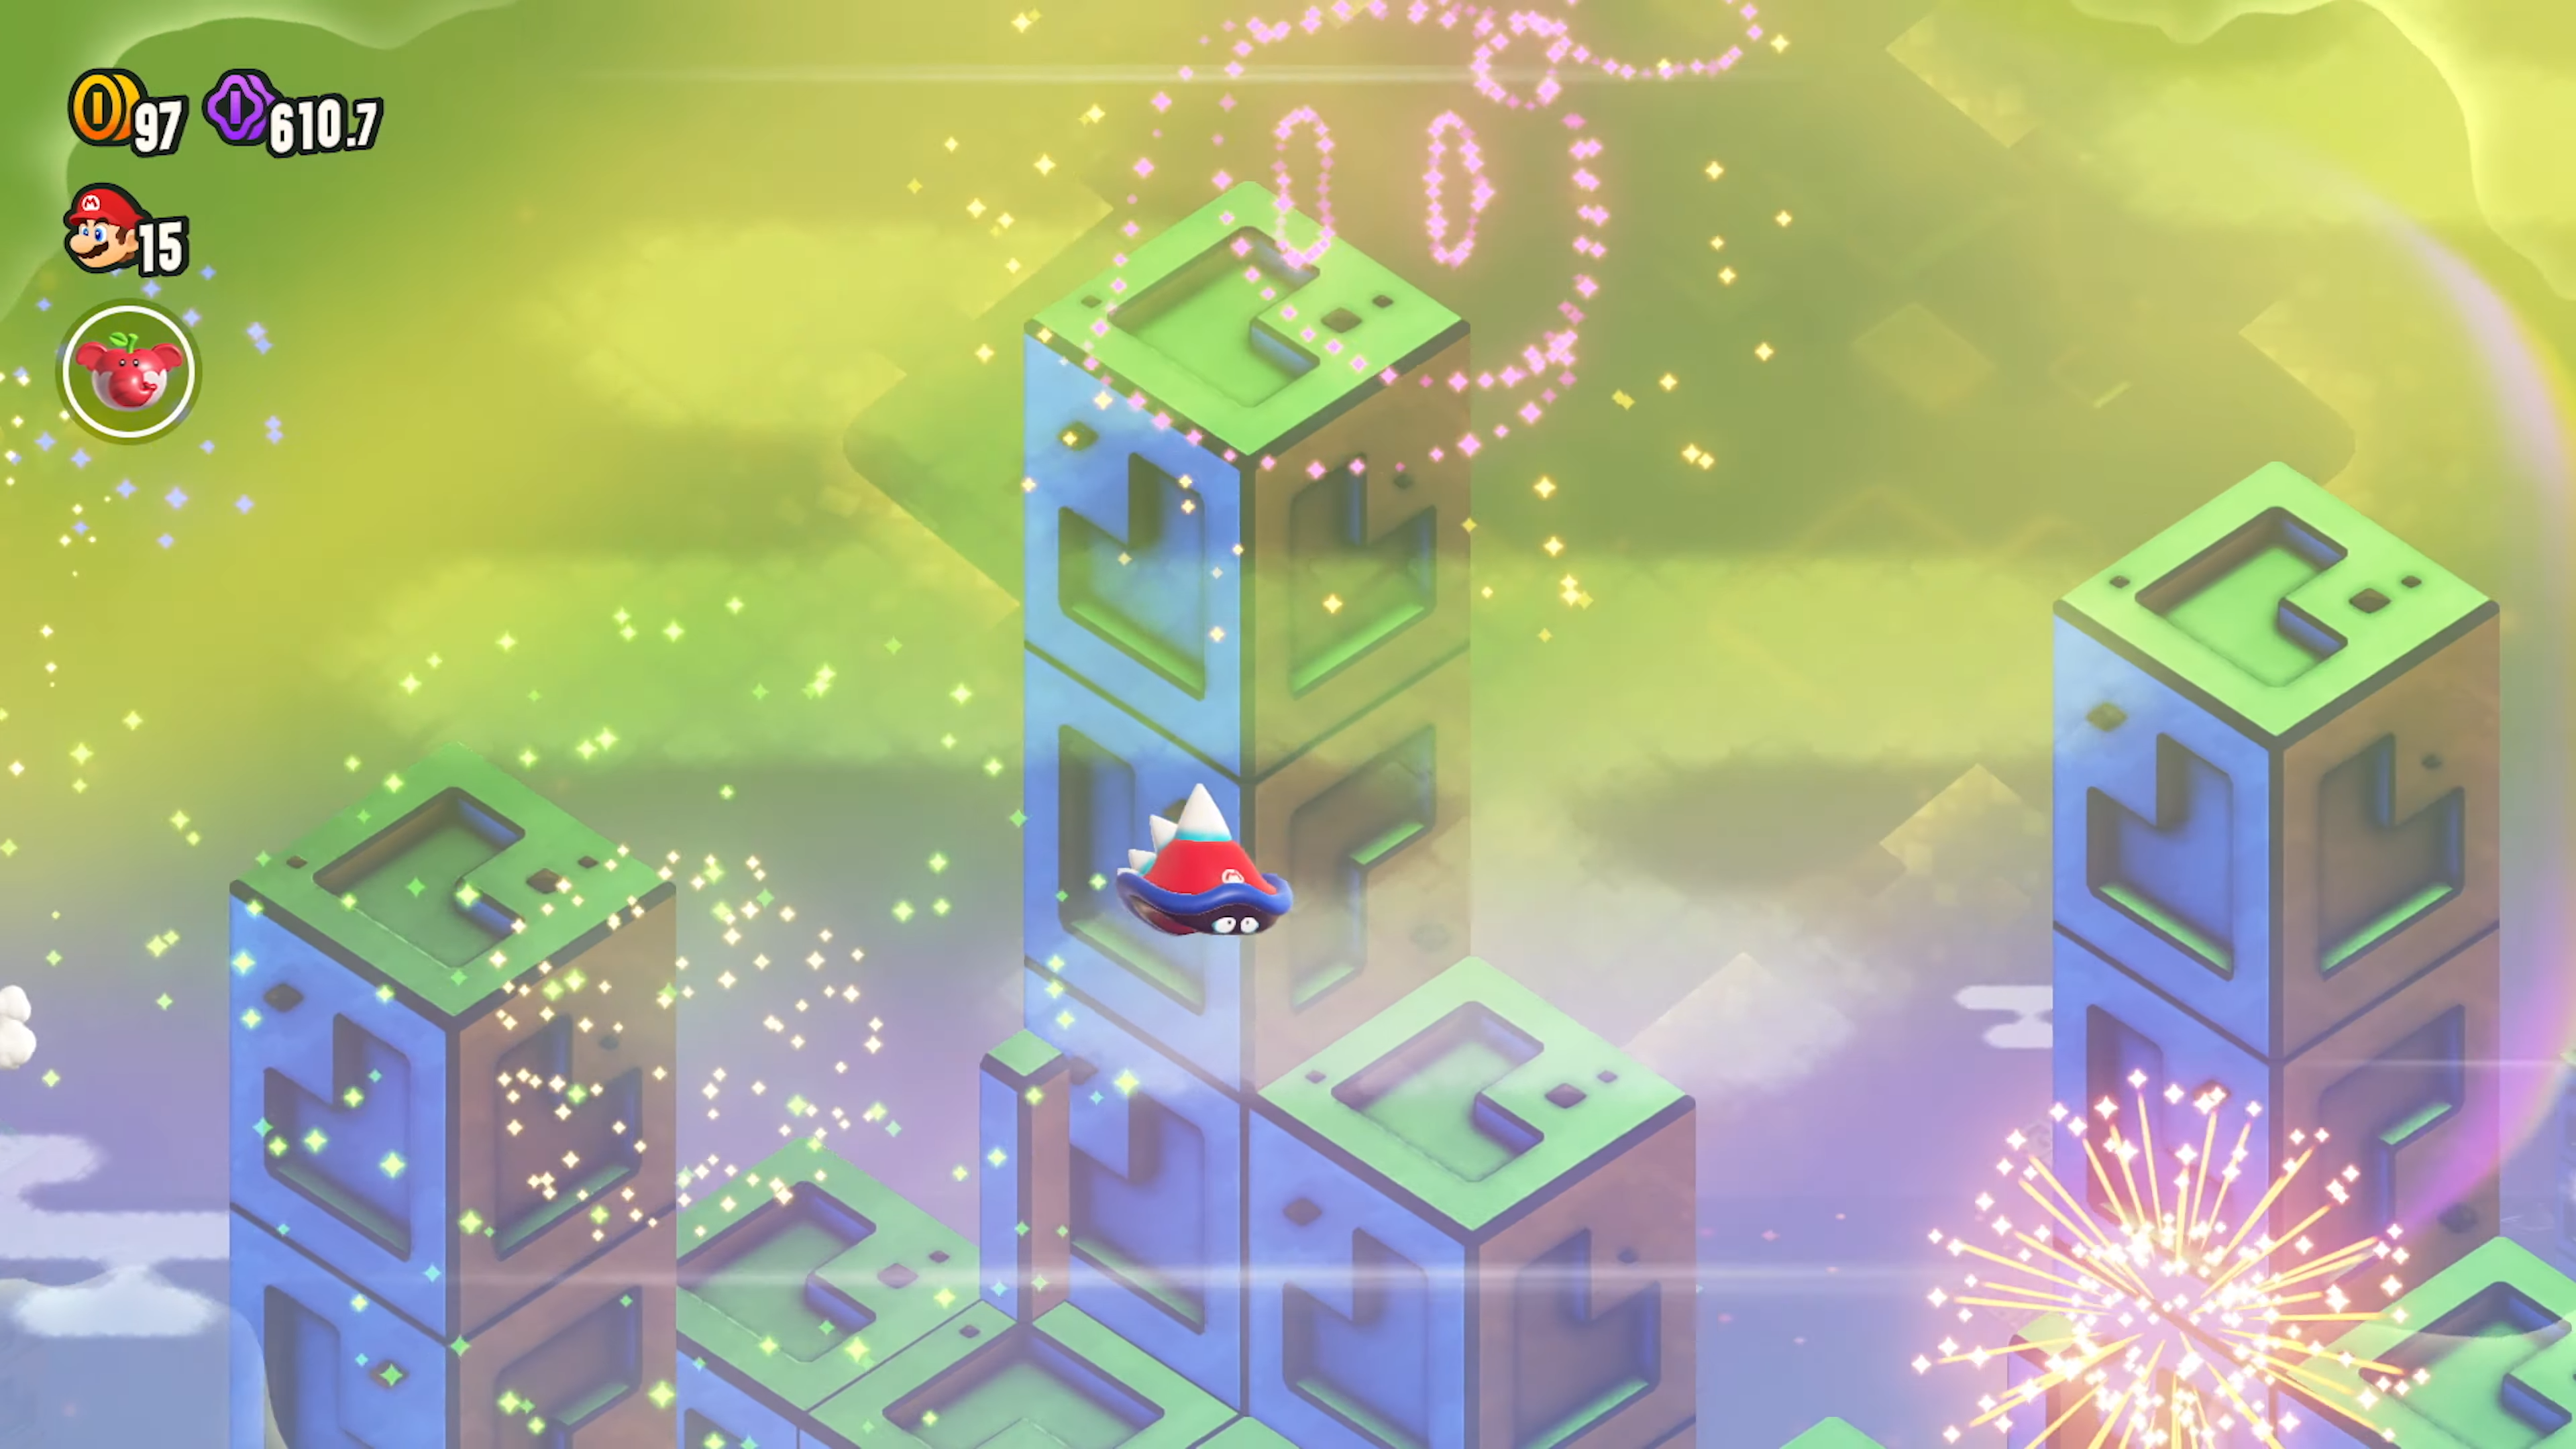 Снимок экрана из Super Mario Bros. Wonder, на котором Марио воплощается в колючее существо и летает по воздуху